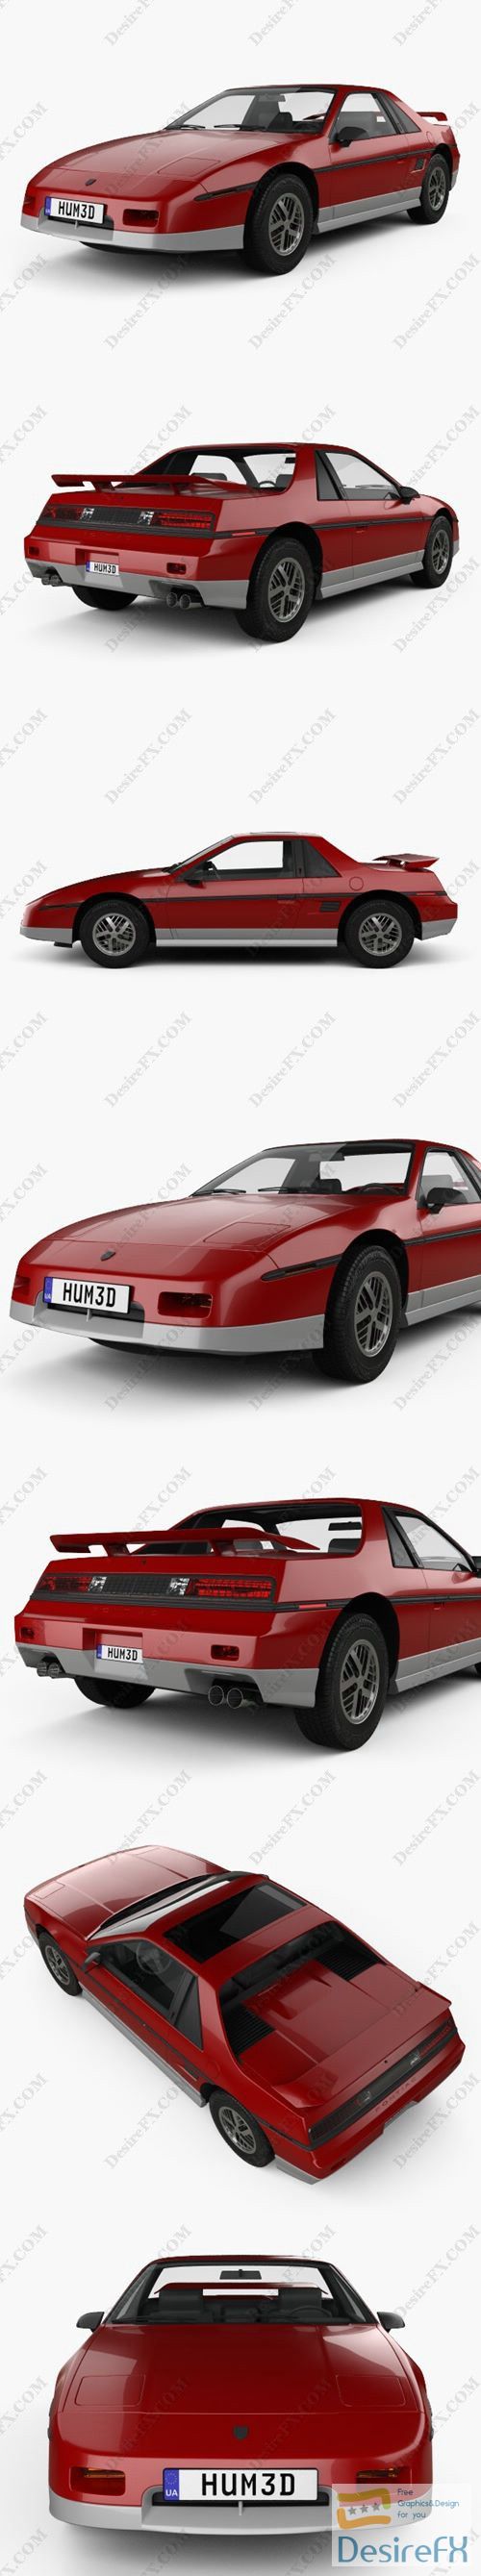 Pontiac Fiero GT 1985 3D Model